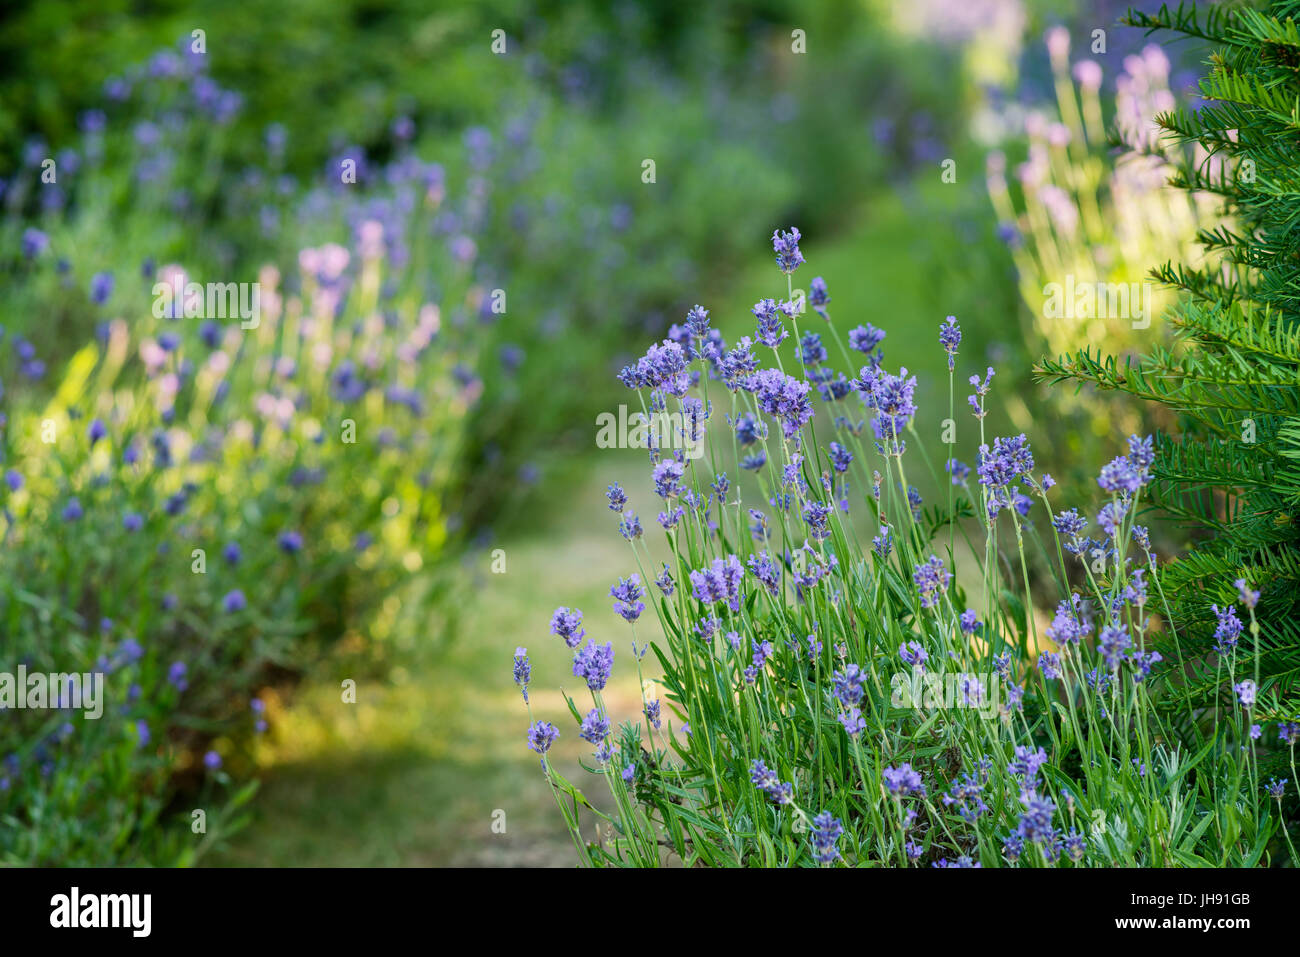 Lavender in garden Stock Photo